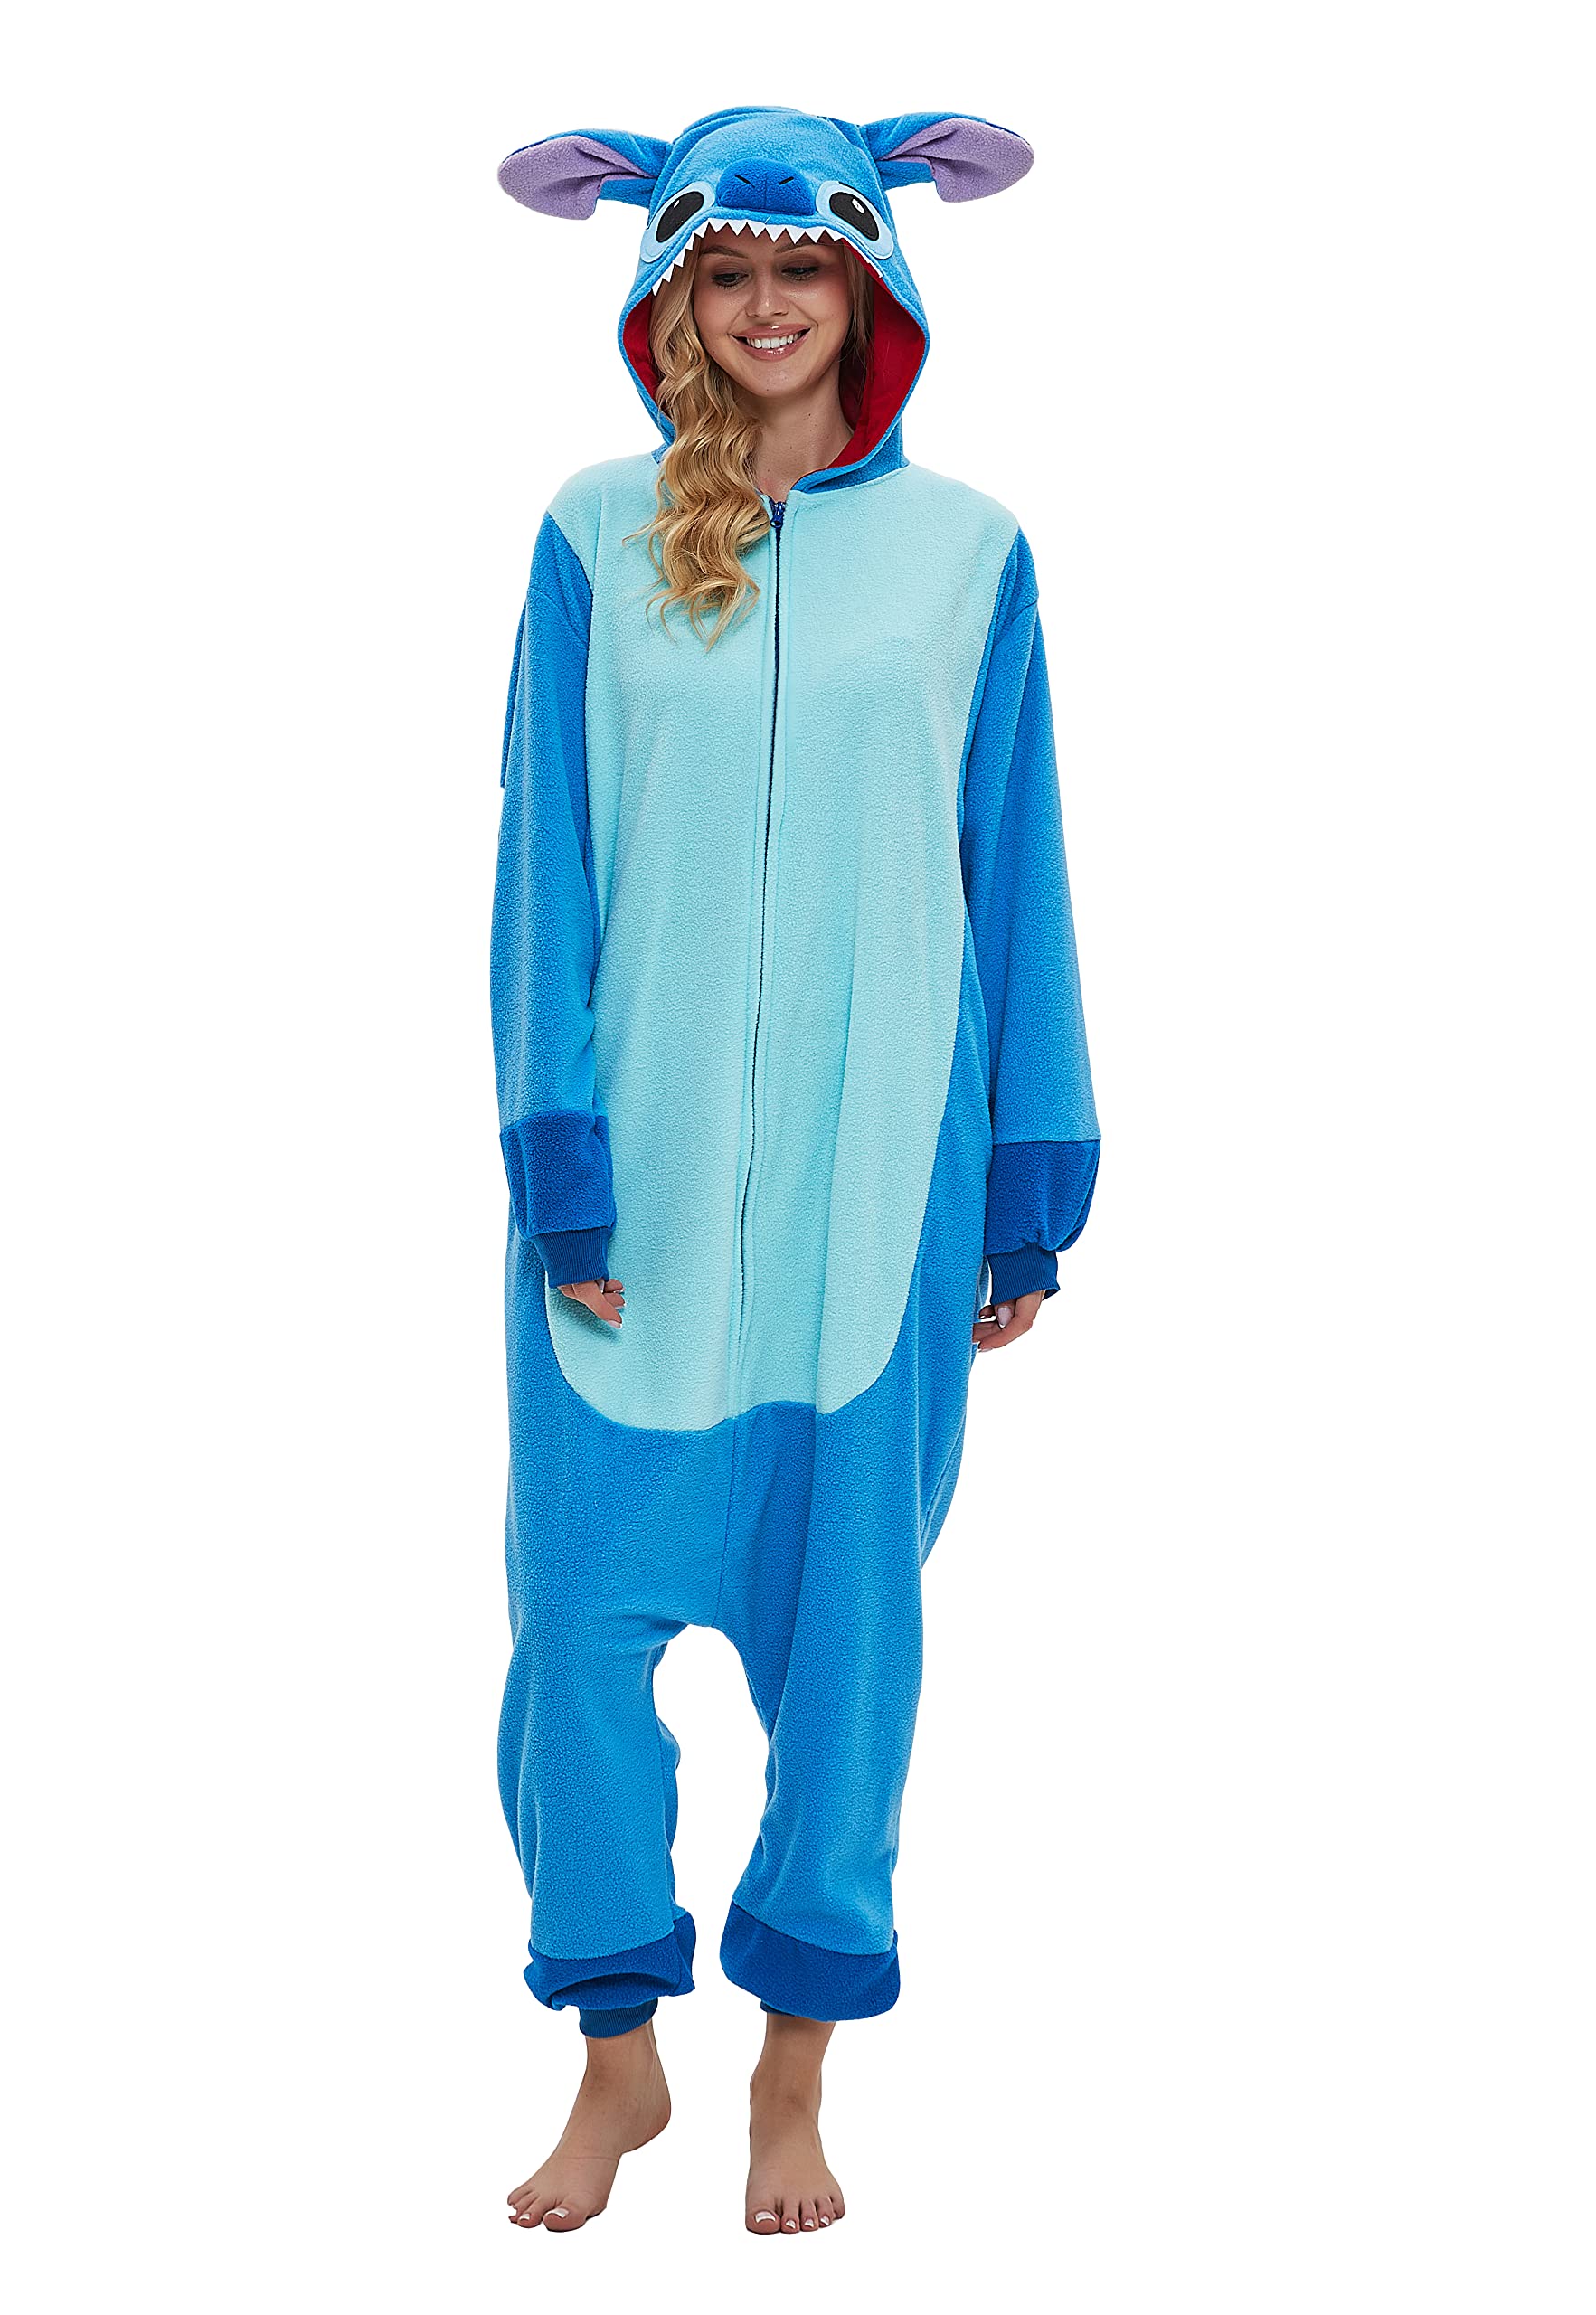 SMITHROAD Jumpsuit Tier Karton Fasching Halloween Kostüm Sleepsuit Cosplay Fleece-Overall Pyjama Schlafanzug Erwachsene Unisex Nachtwäsche Krümelmonster Onesie M